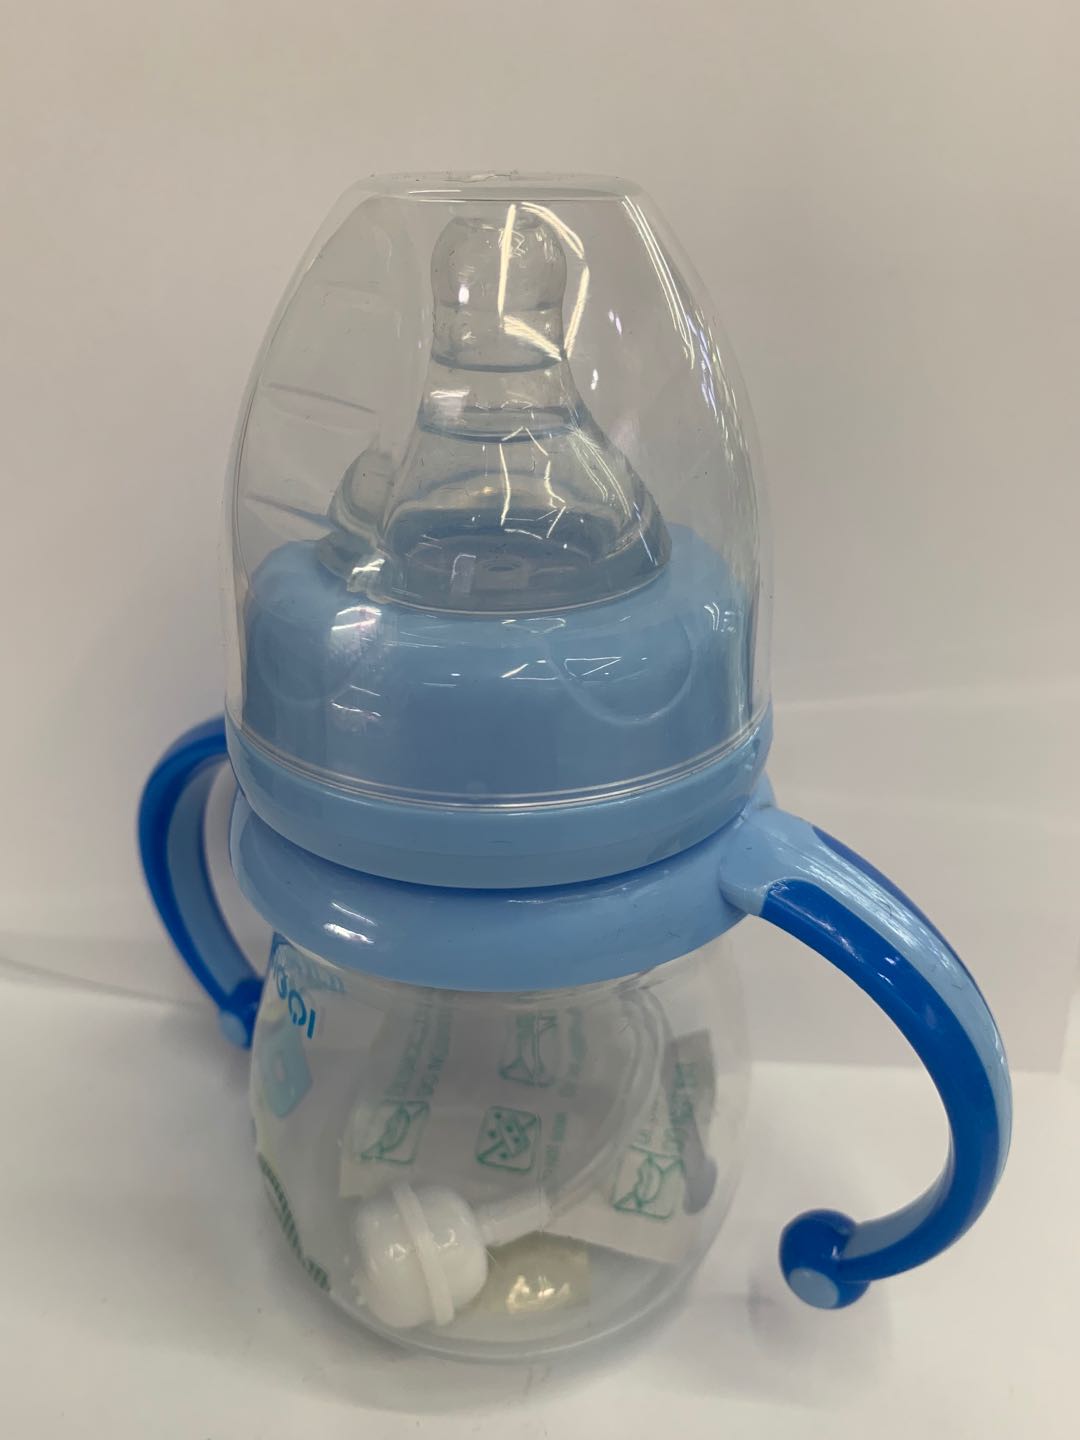 专业婴儿用品制造瓶口宽口防胀气新生儿硅胶奶瓶03图